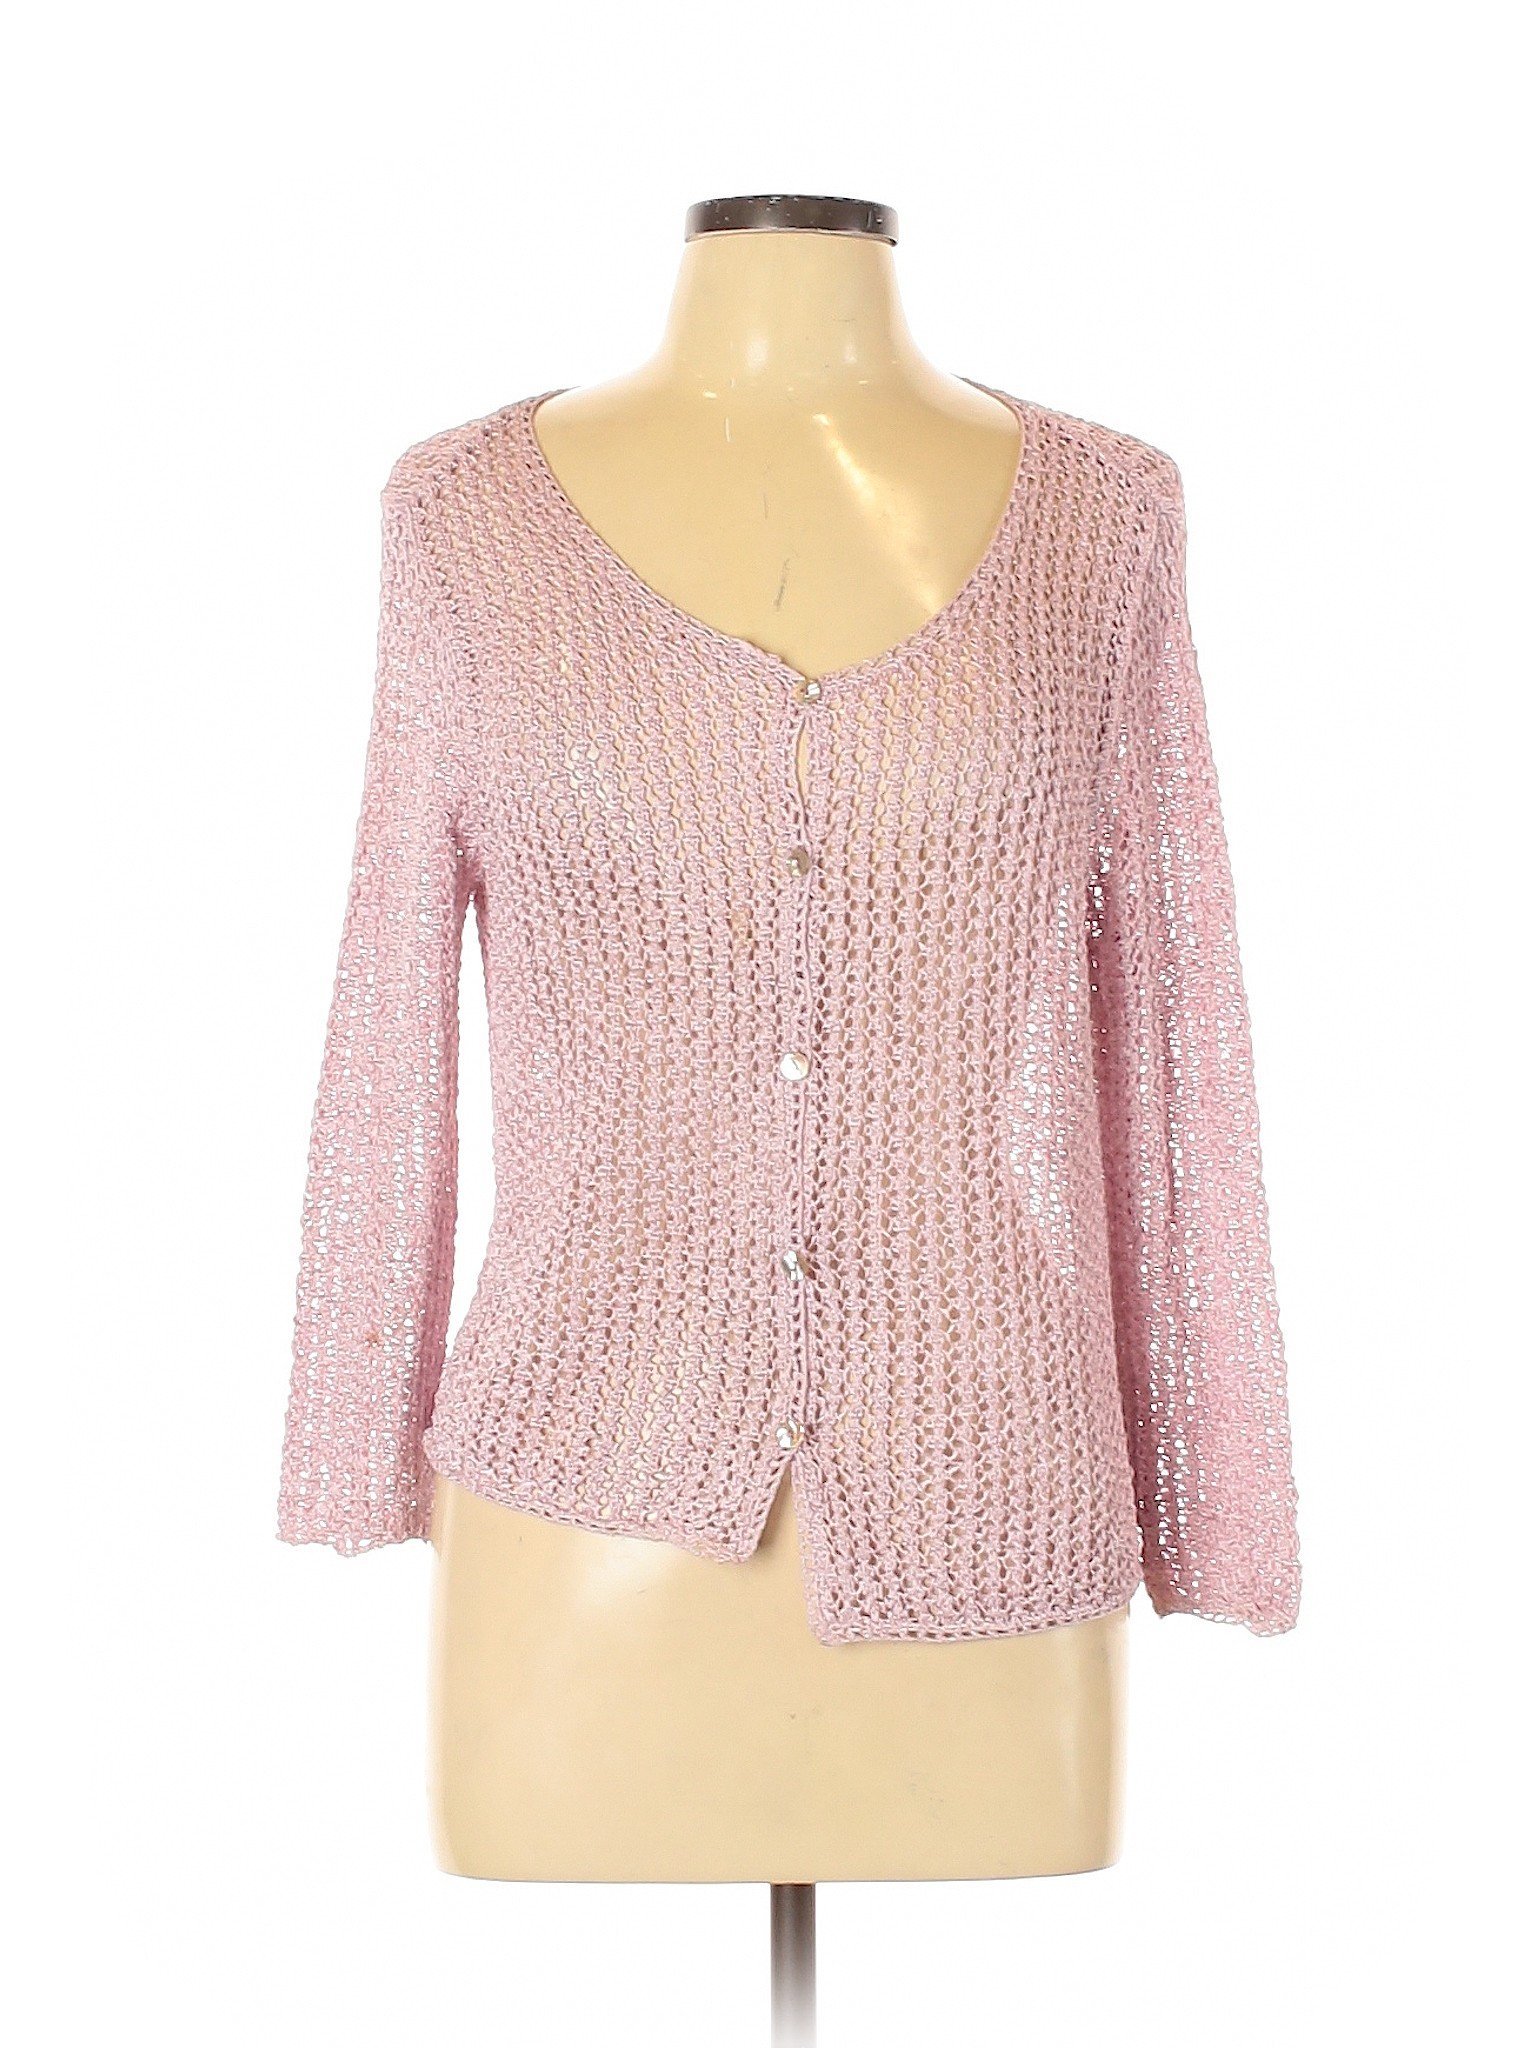 Sigrid Olsen 100% Polyester Color Block Purple Pink Cardigan Size L ...